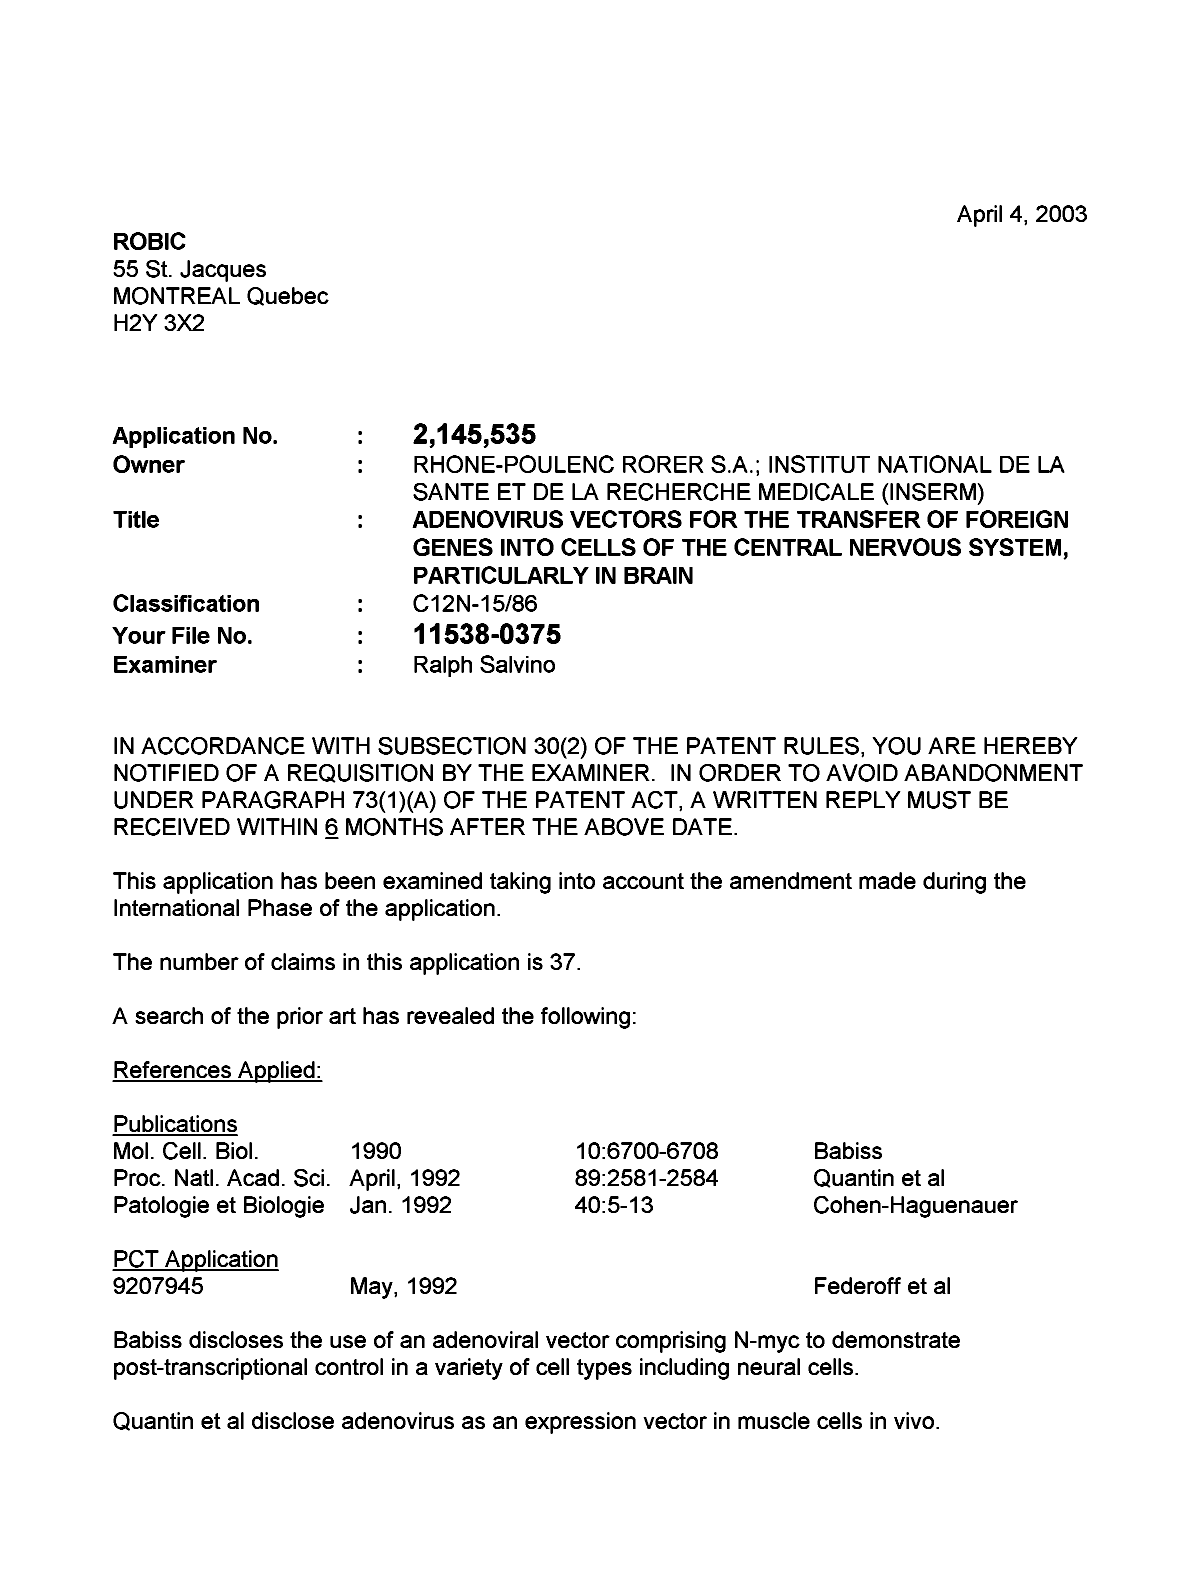 Document de brevet canadien 2145535. Poursuite-Amendment 20021204. Image 1 de 4